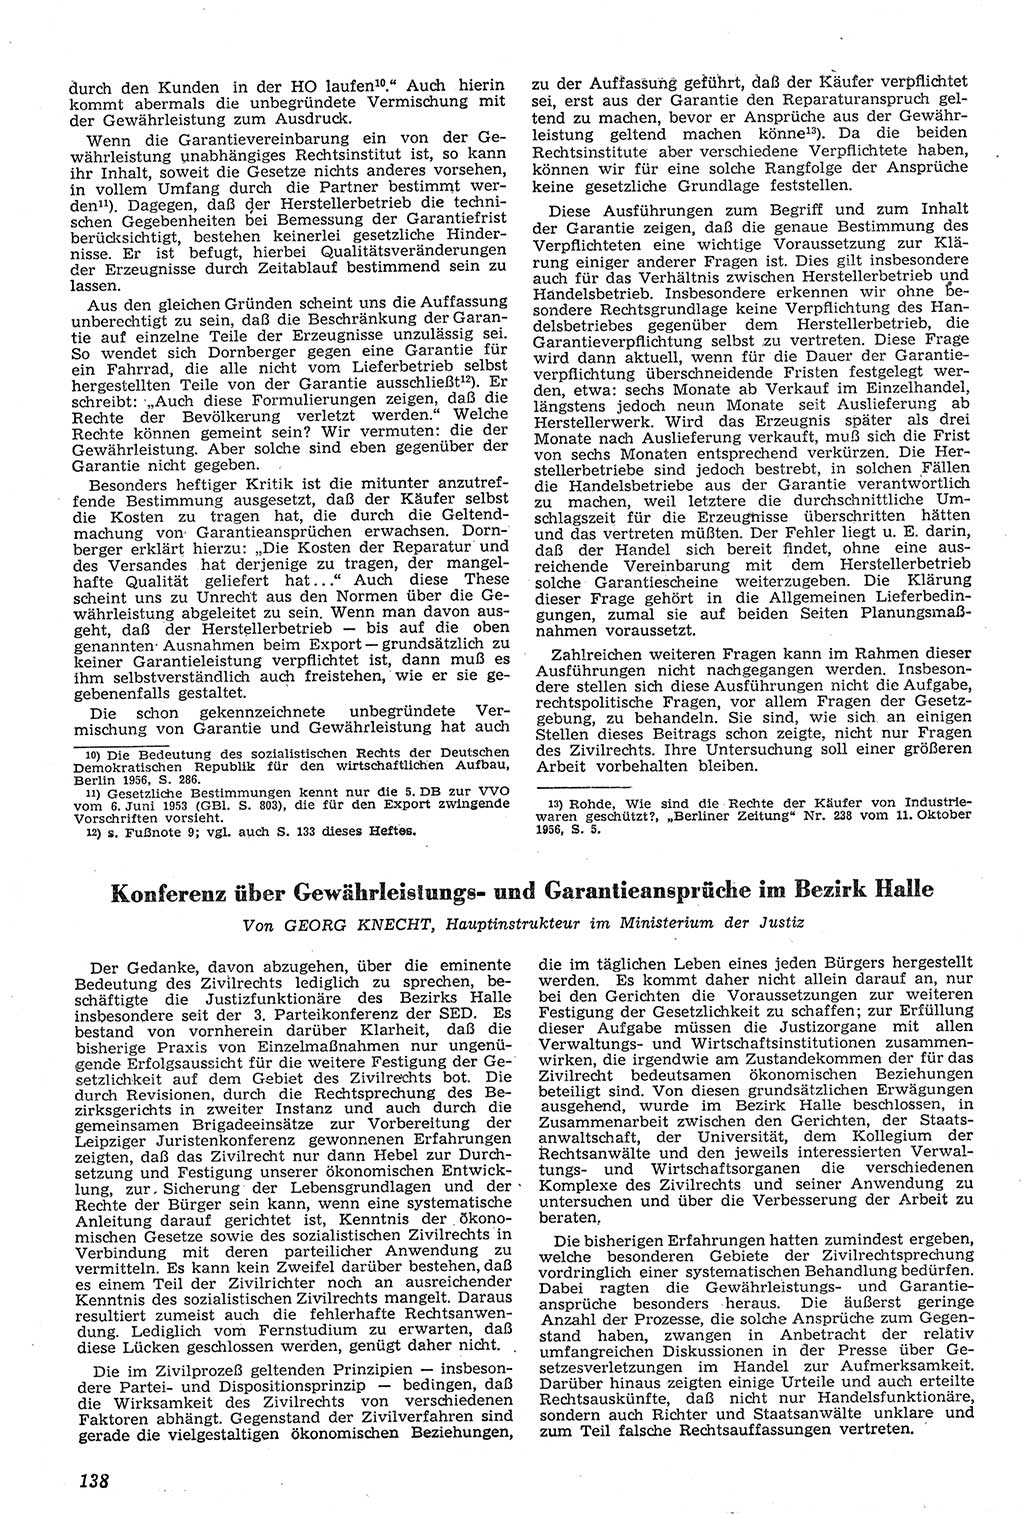 Neue Justiz (NJ), Zeitschrift für Recht und Rechtswissenschaft [Deutsche Demokratische Republik (DDR)], 11. Jahrgang 1957, Seite 138 (NJ DDR 1957, S. 138)